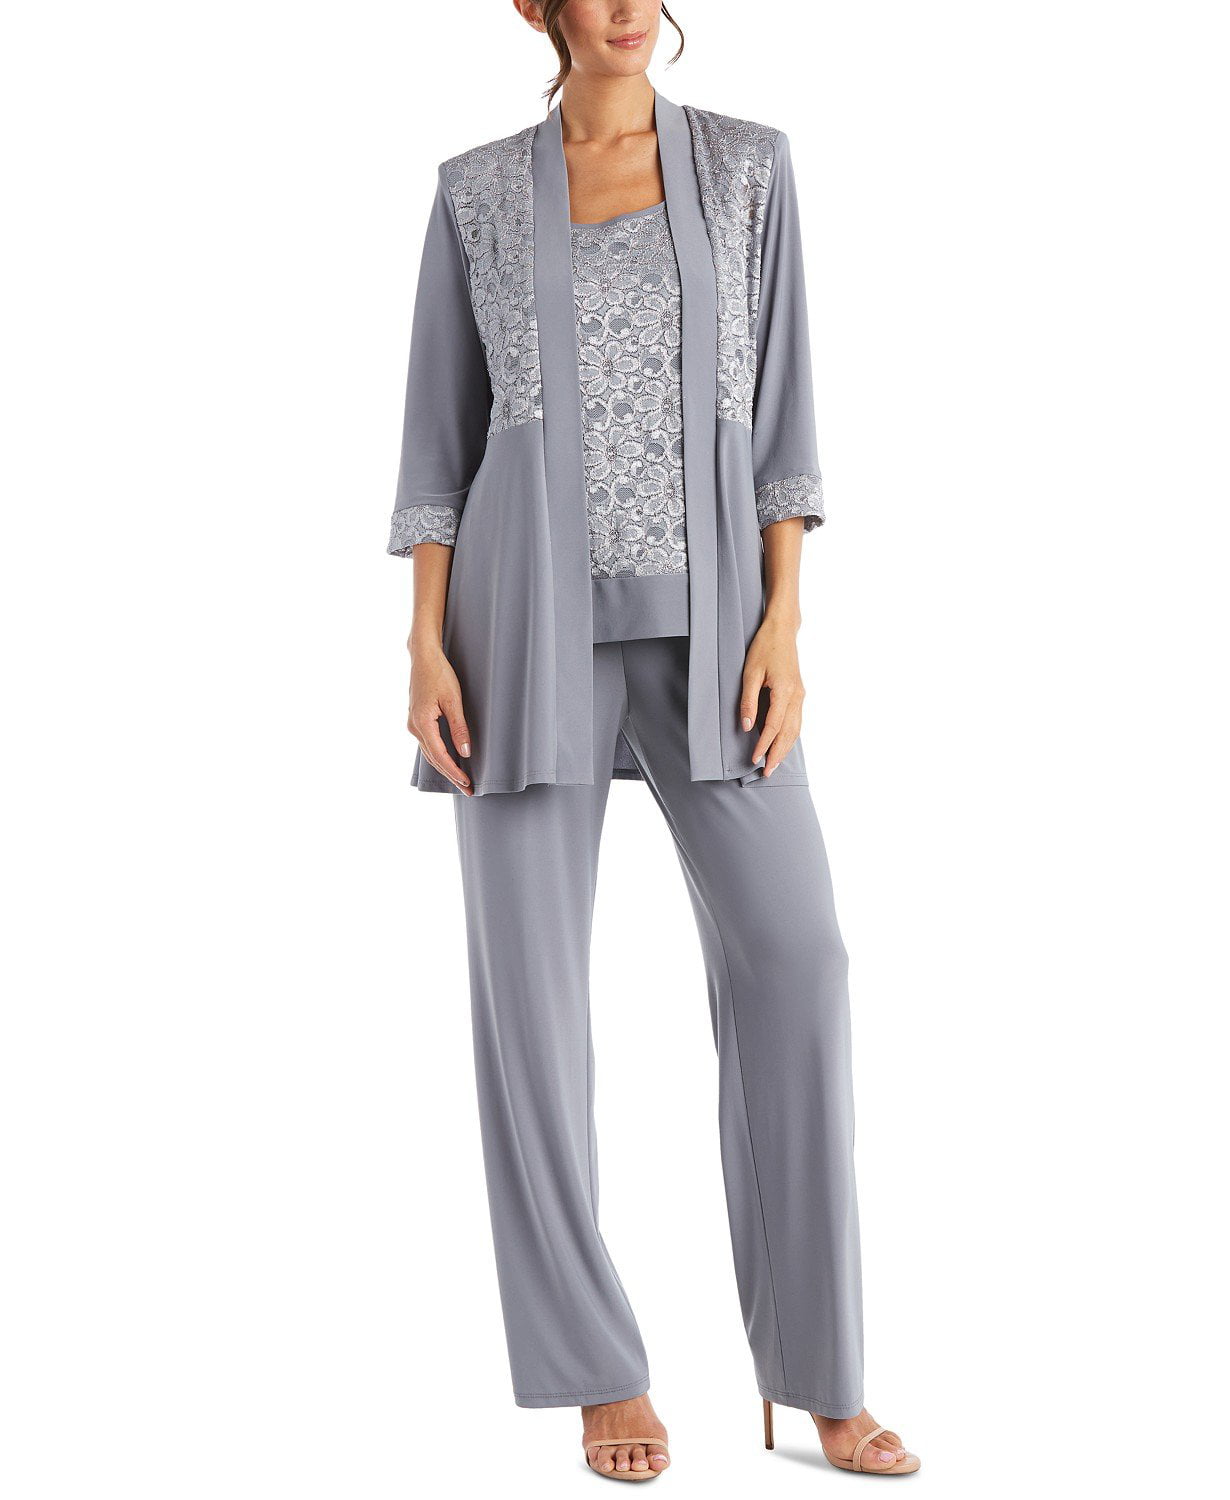 R&M Richards - R&M Richards Women's Lace ITY 2 Piece Pant Suit - Mother ...